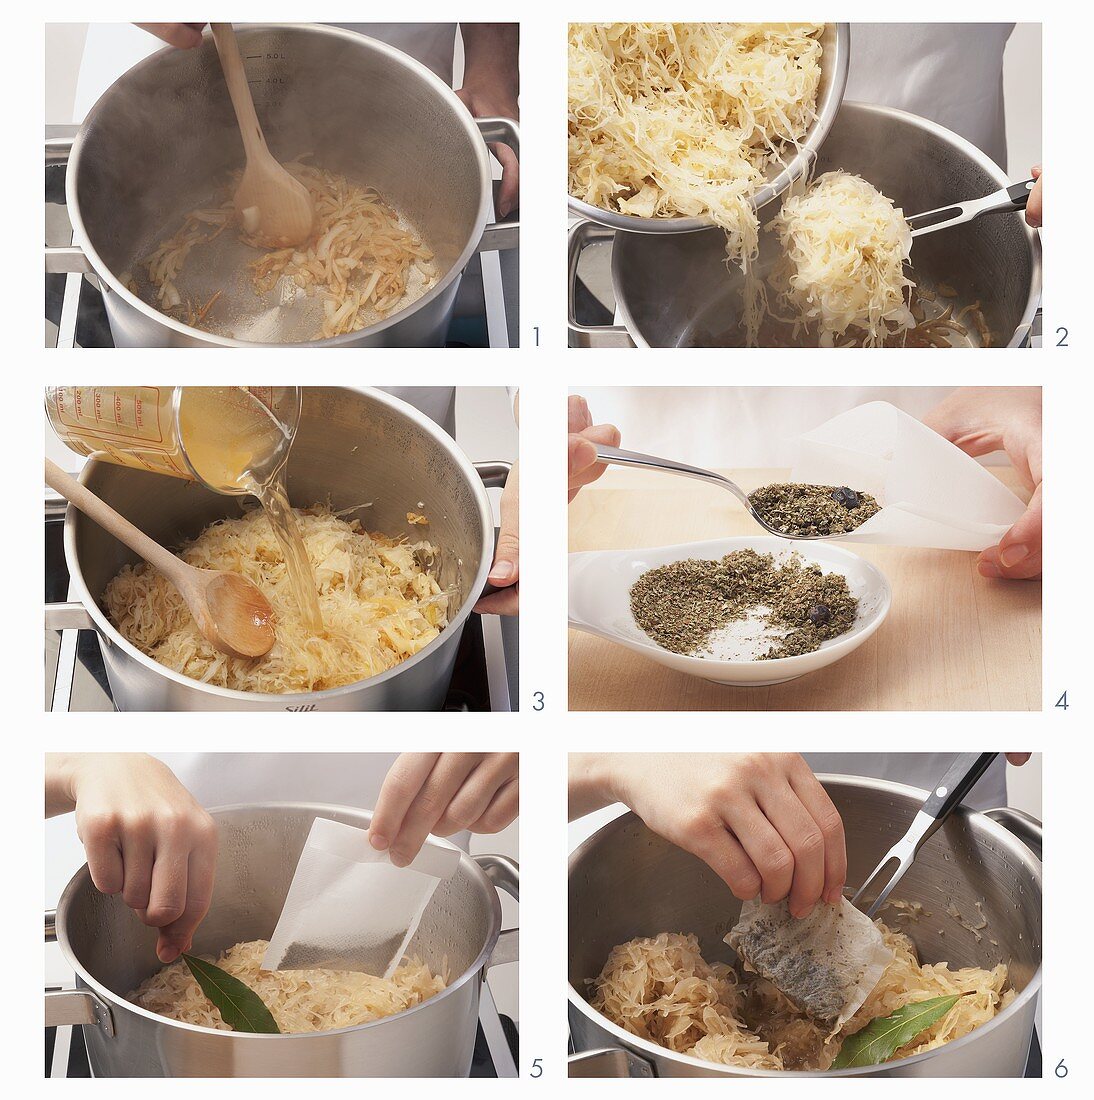 Sauerkraut being prepared